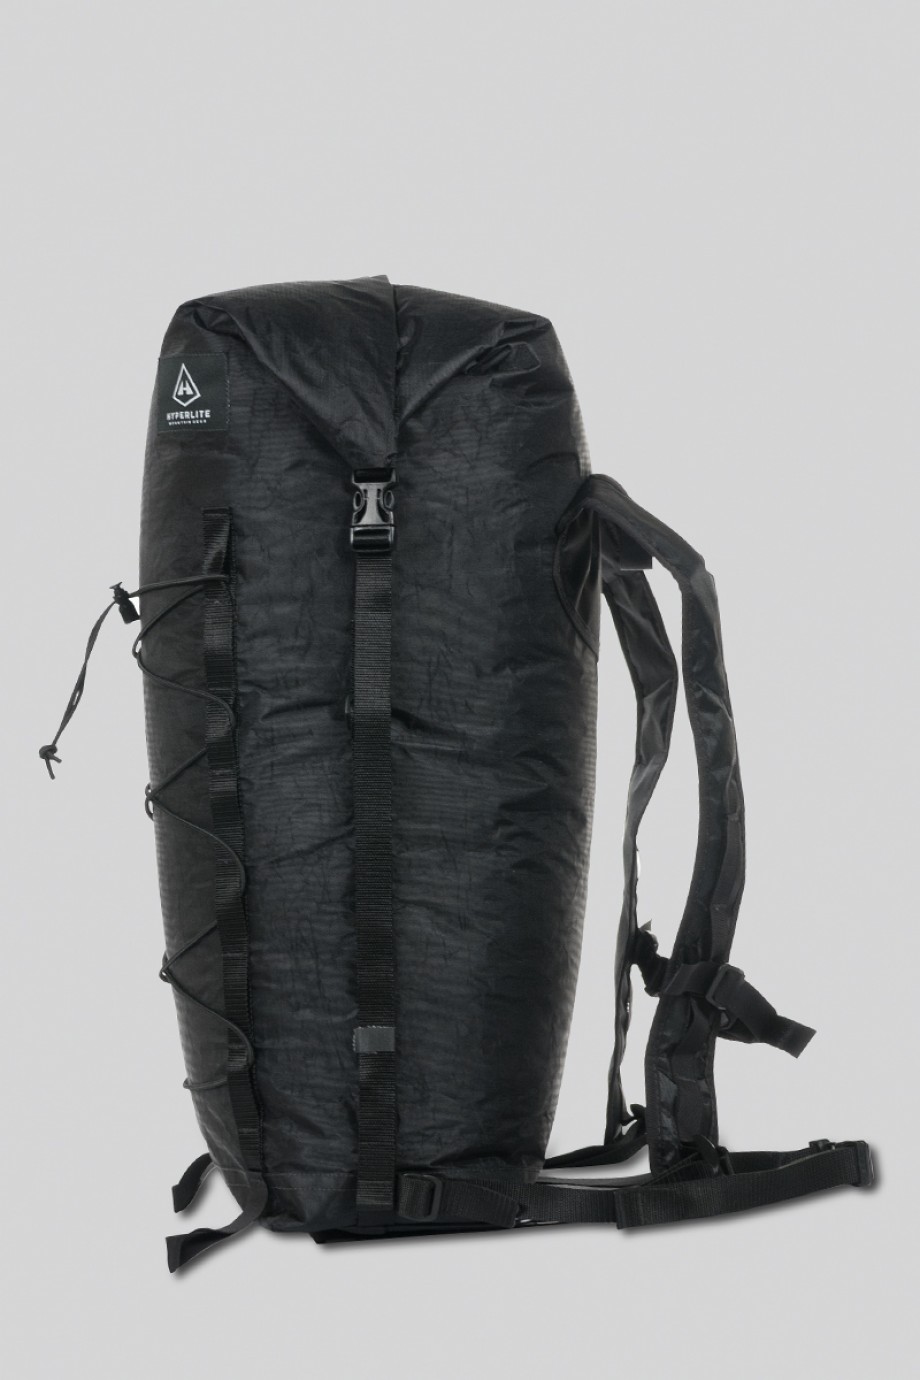 Hyperlite Mountain Gear Summit Pack 30 L Black Backpackinglight Dk